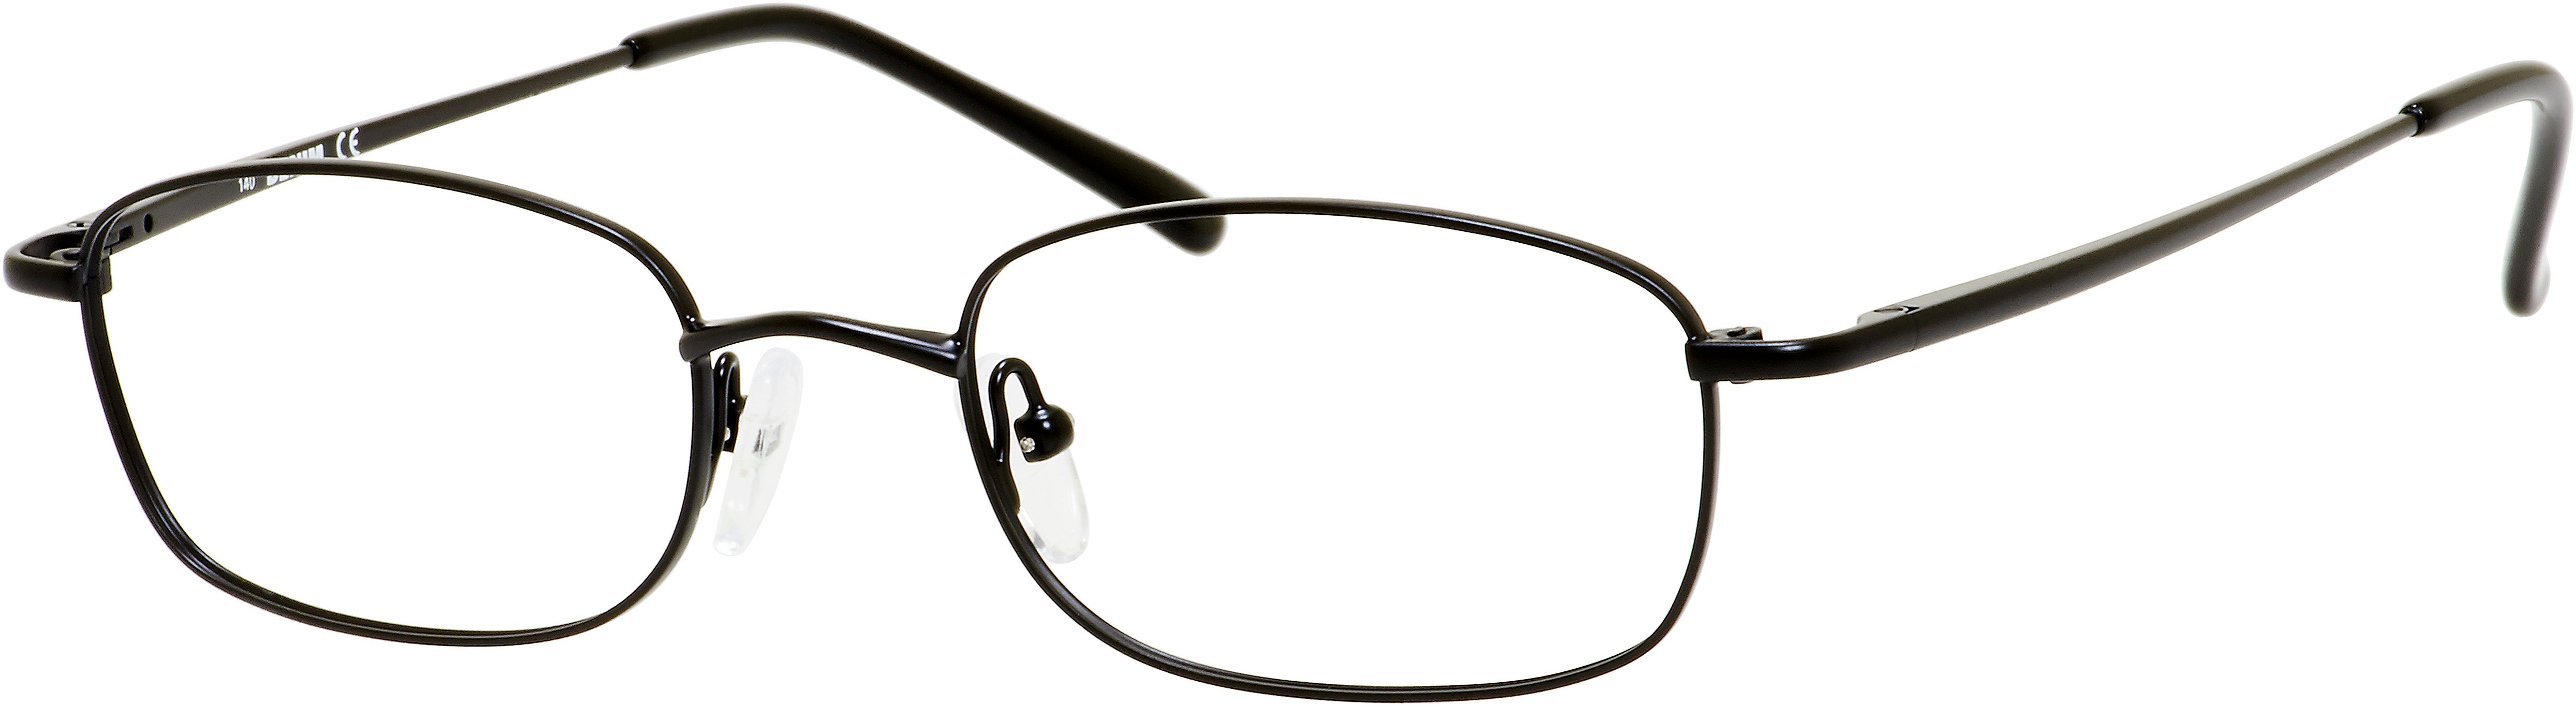  Denim 161 Rectangular Eyeglasses 0003-0003  Matte Black (00 Demo Lens)